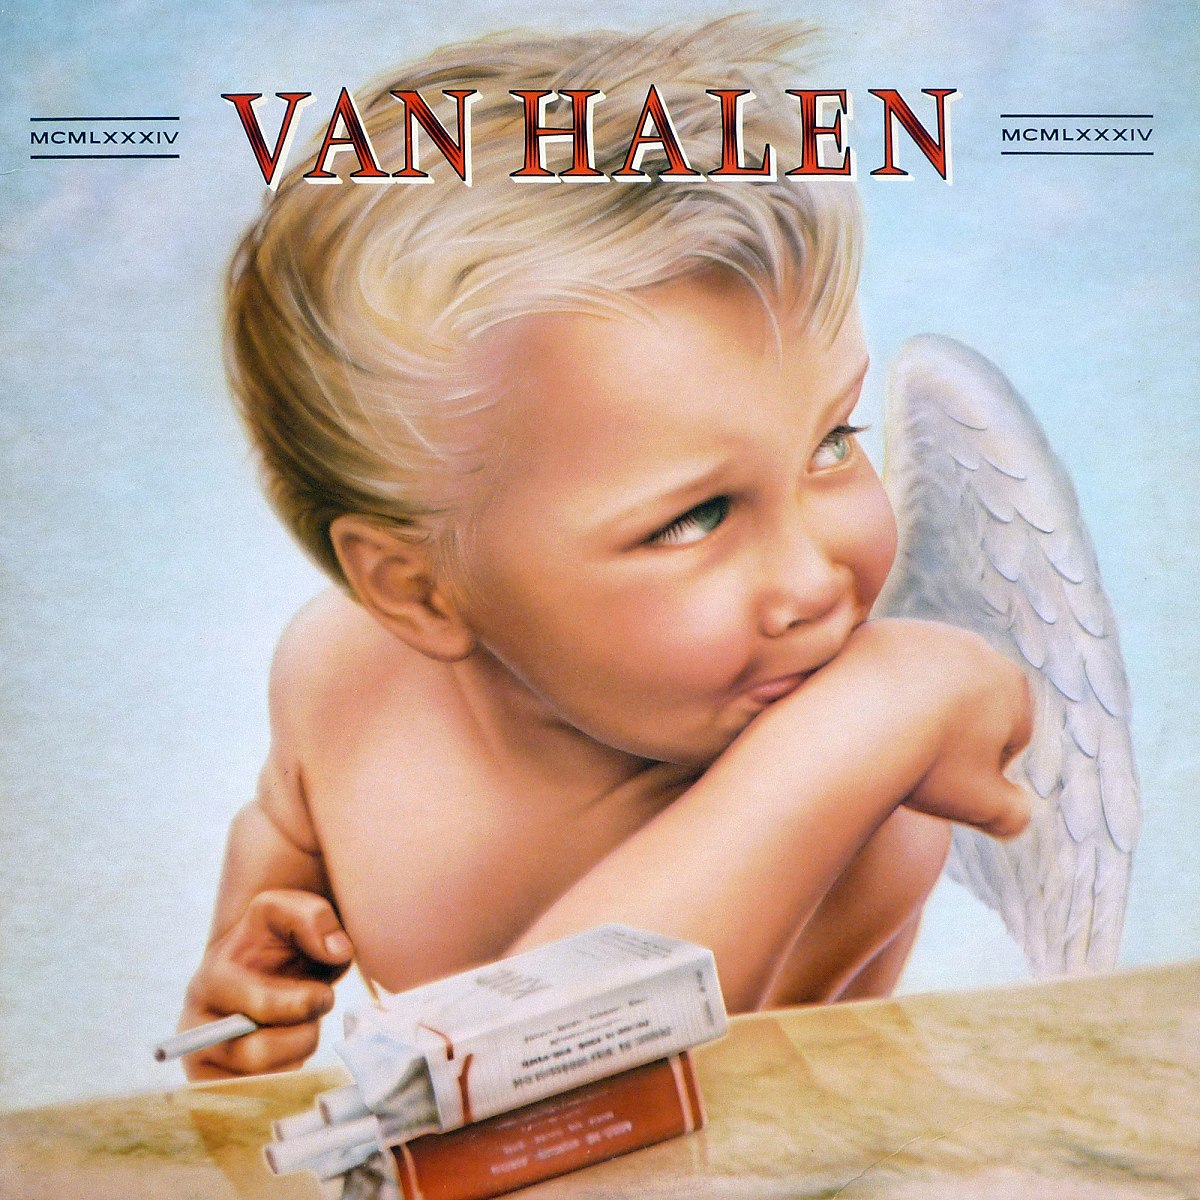 Cover of the "1984" album by Van Halen